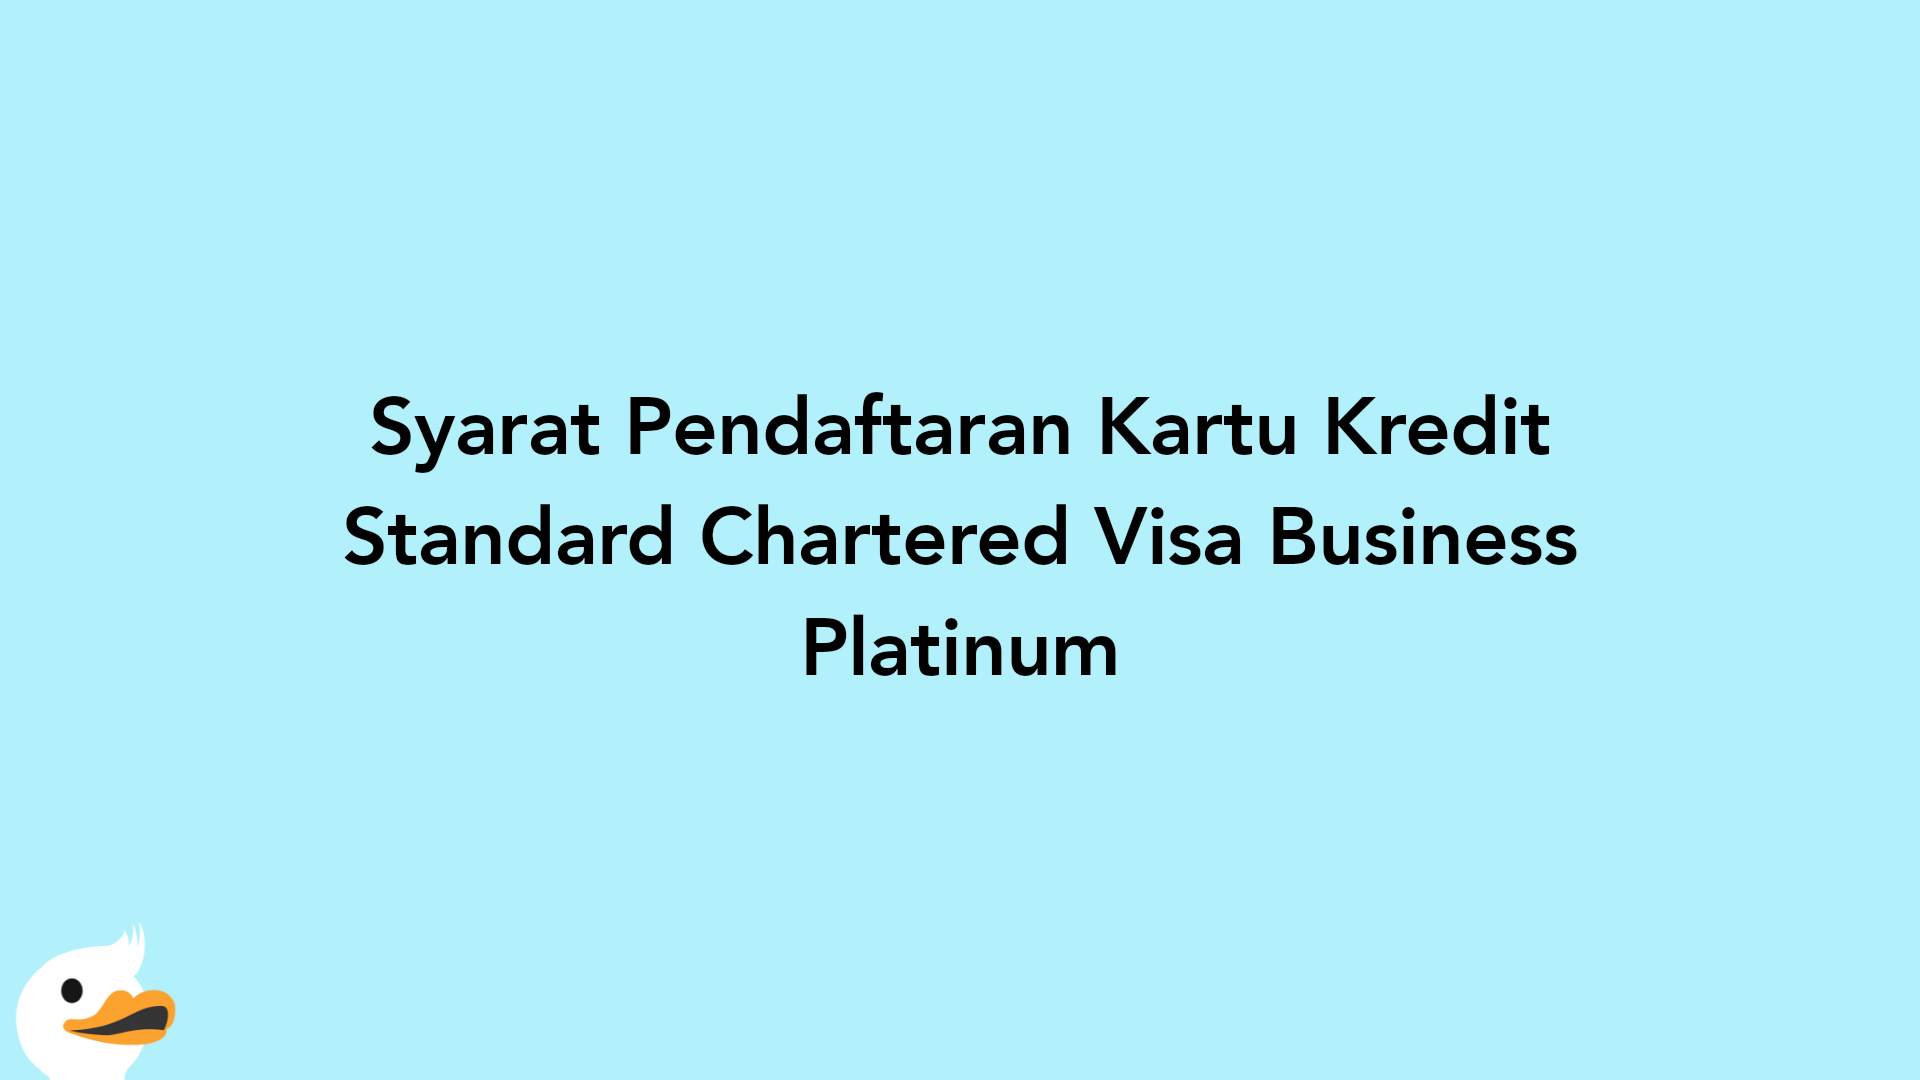 Syarat Pendaftaran Kartu Kredit Standard Chartered Visa Business Platinum